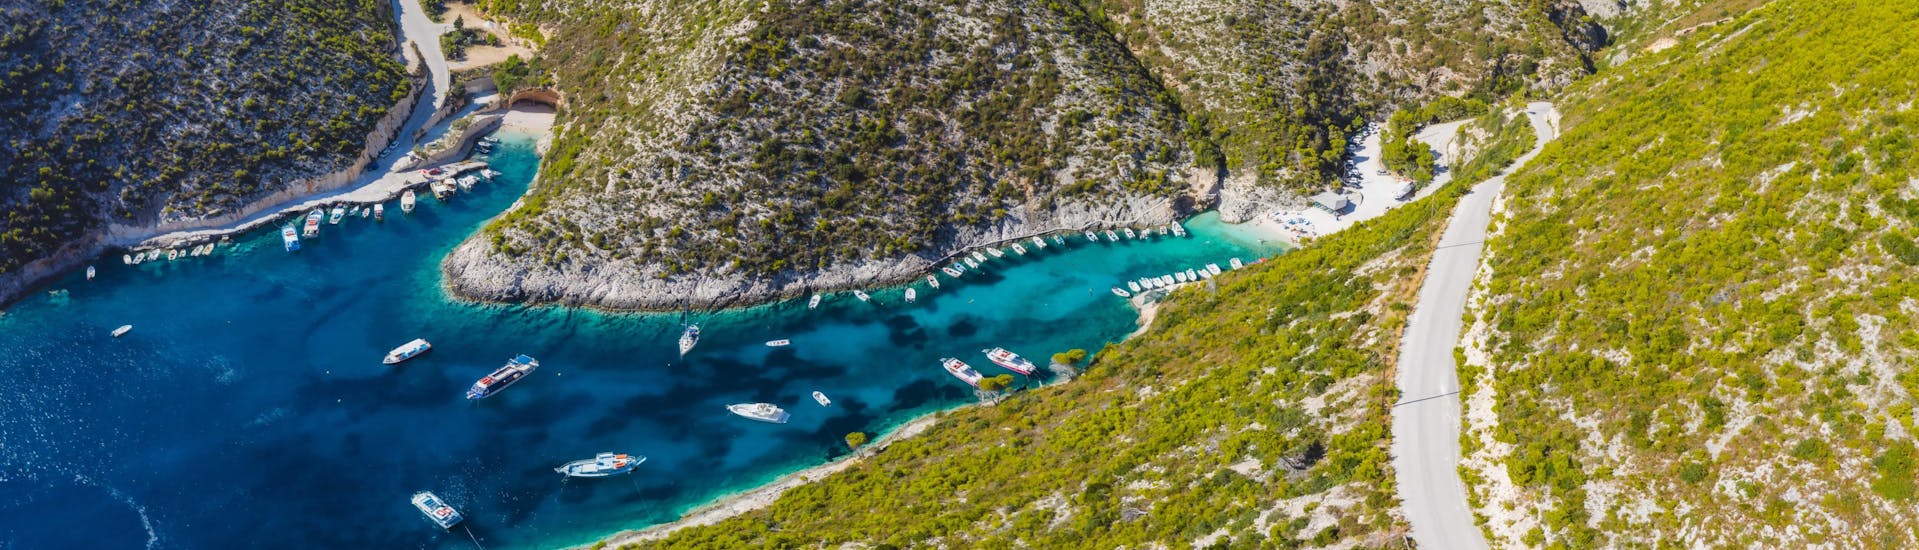 Belle vue de Porto Vomi, une ville de pêcheurs à Zakynthos, une destination très populaire pour les excursions en bateau.